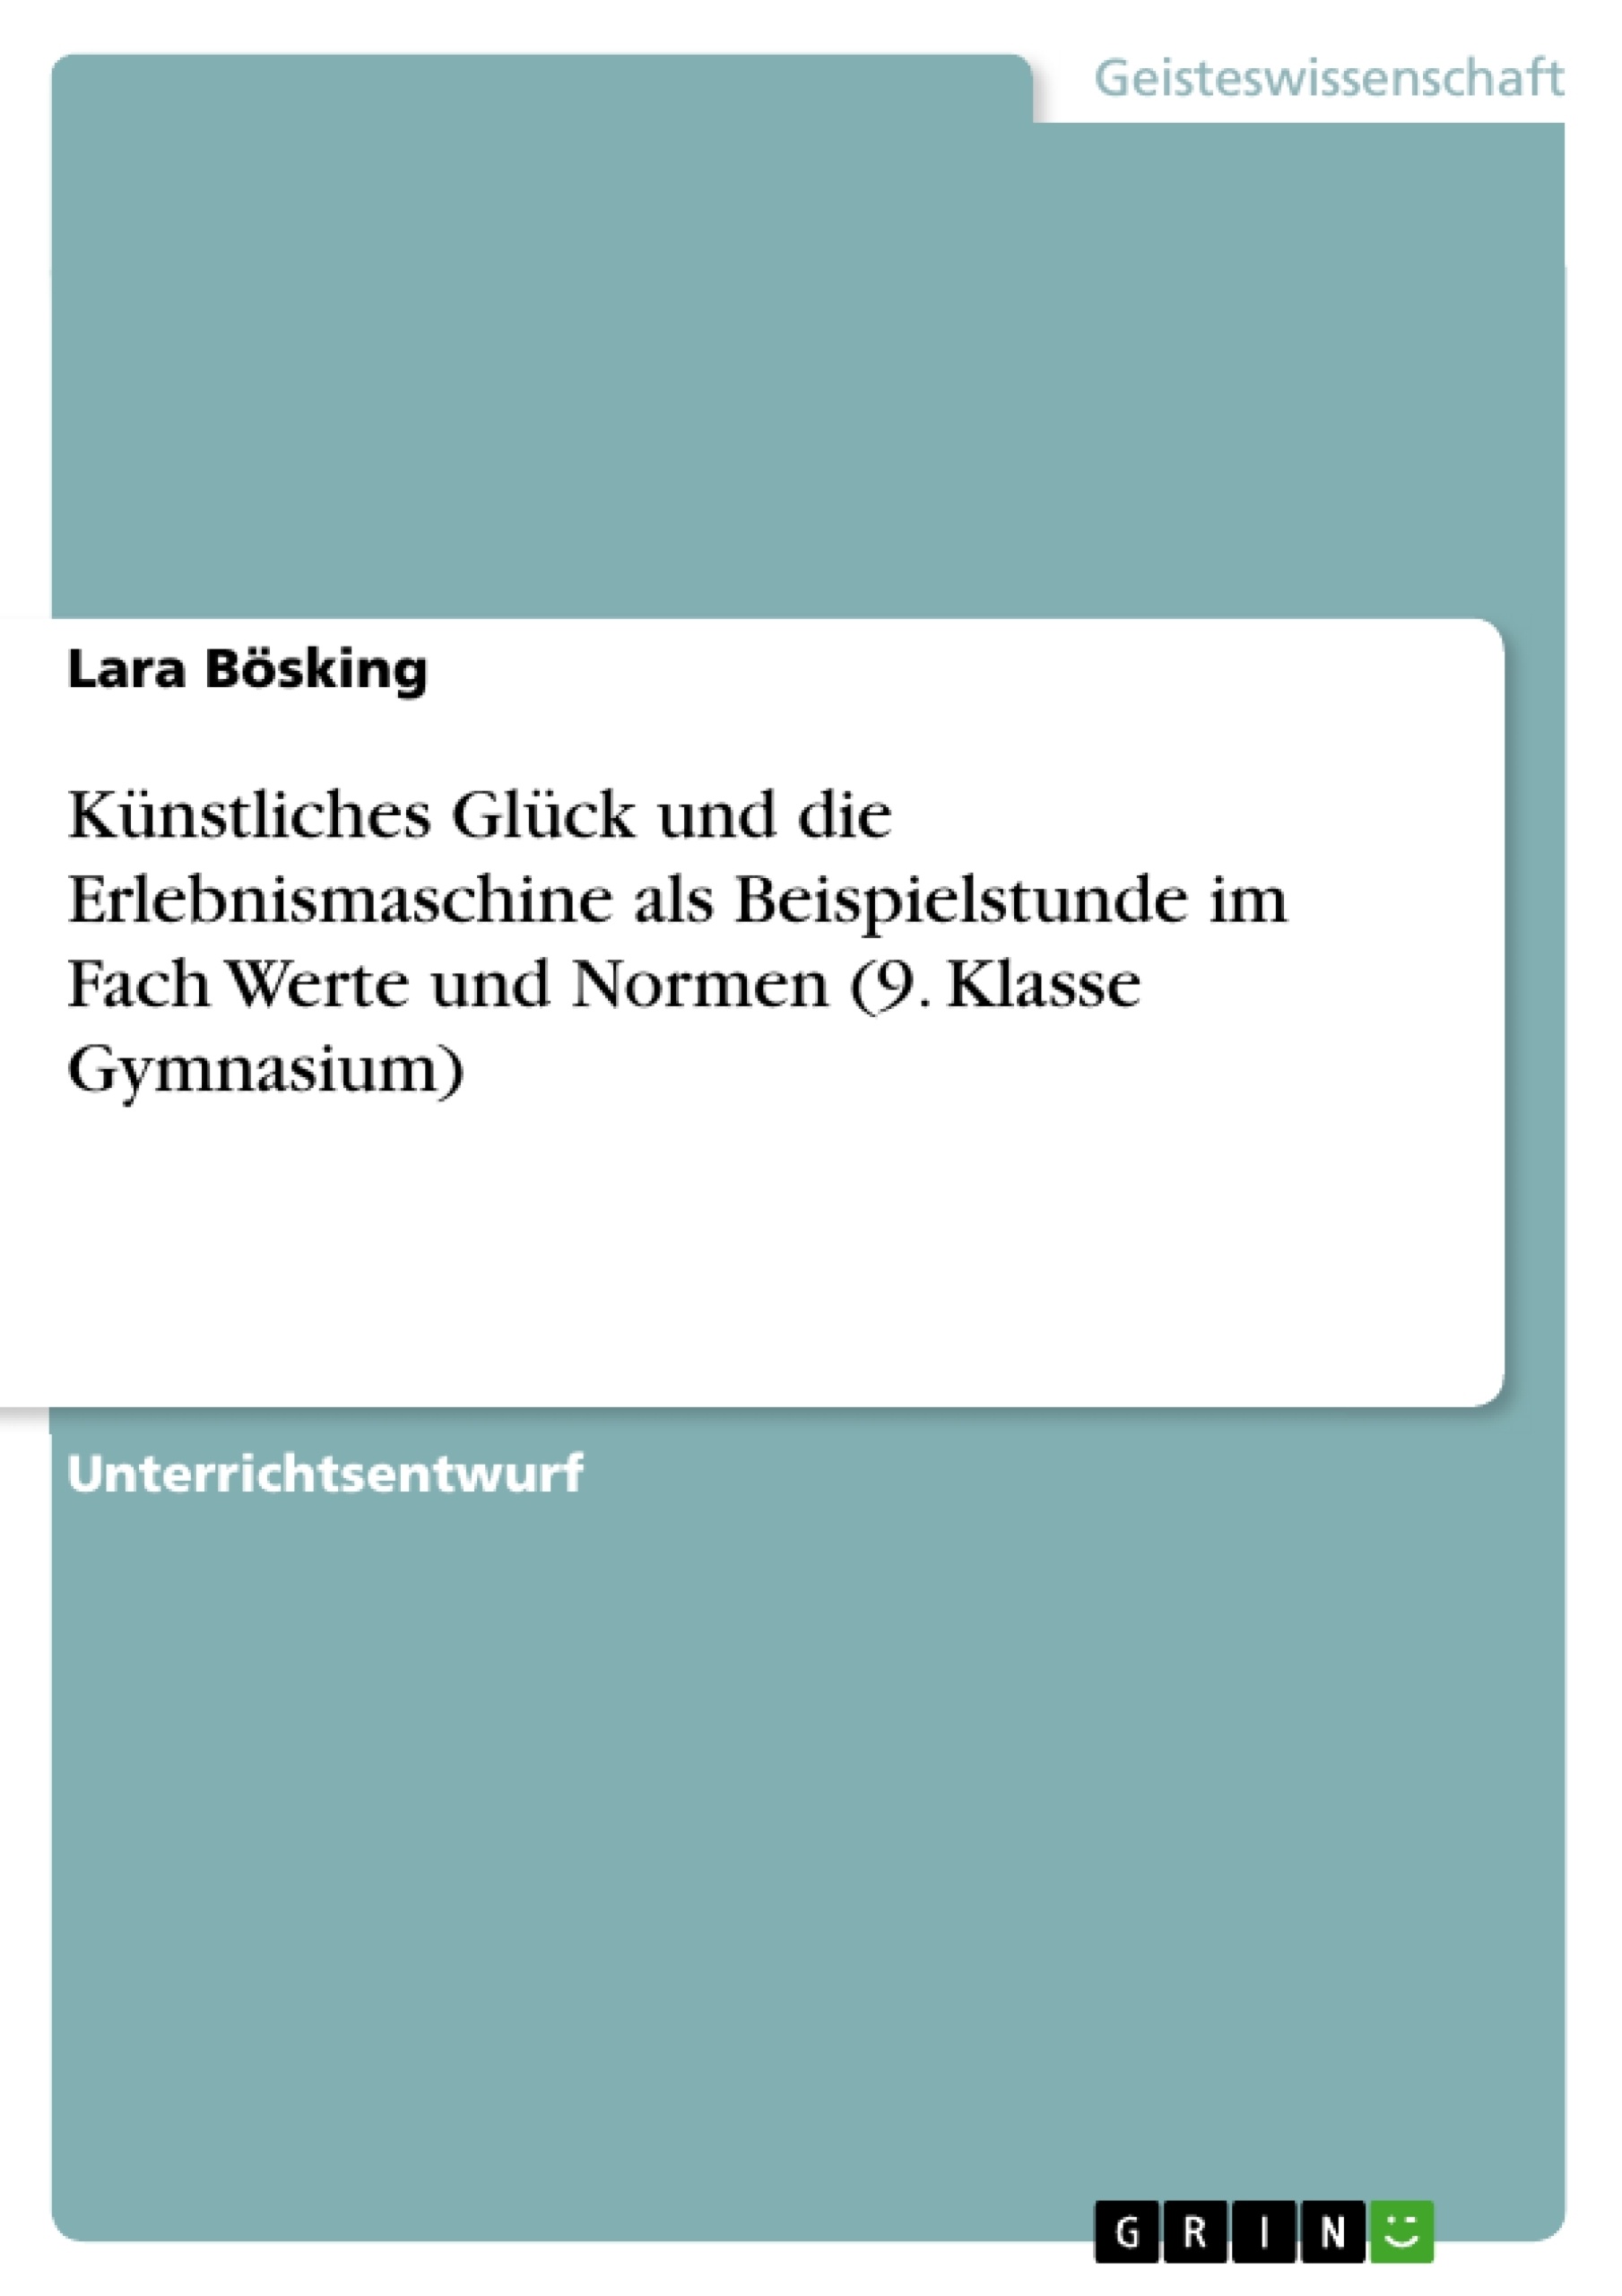 Title: Künstliches Glück und die Erlebnismaschine als Beispielstunde im Fach Werte und Normen (9. Klasse Gymnasium)